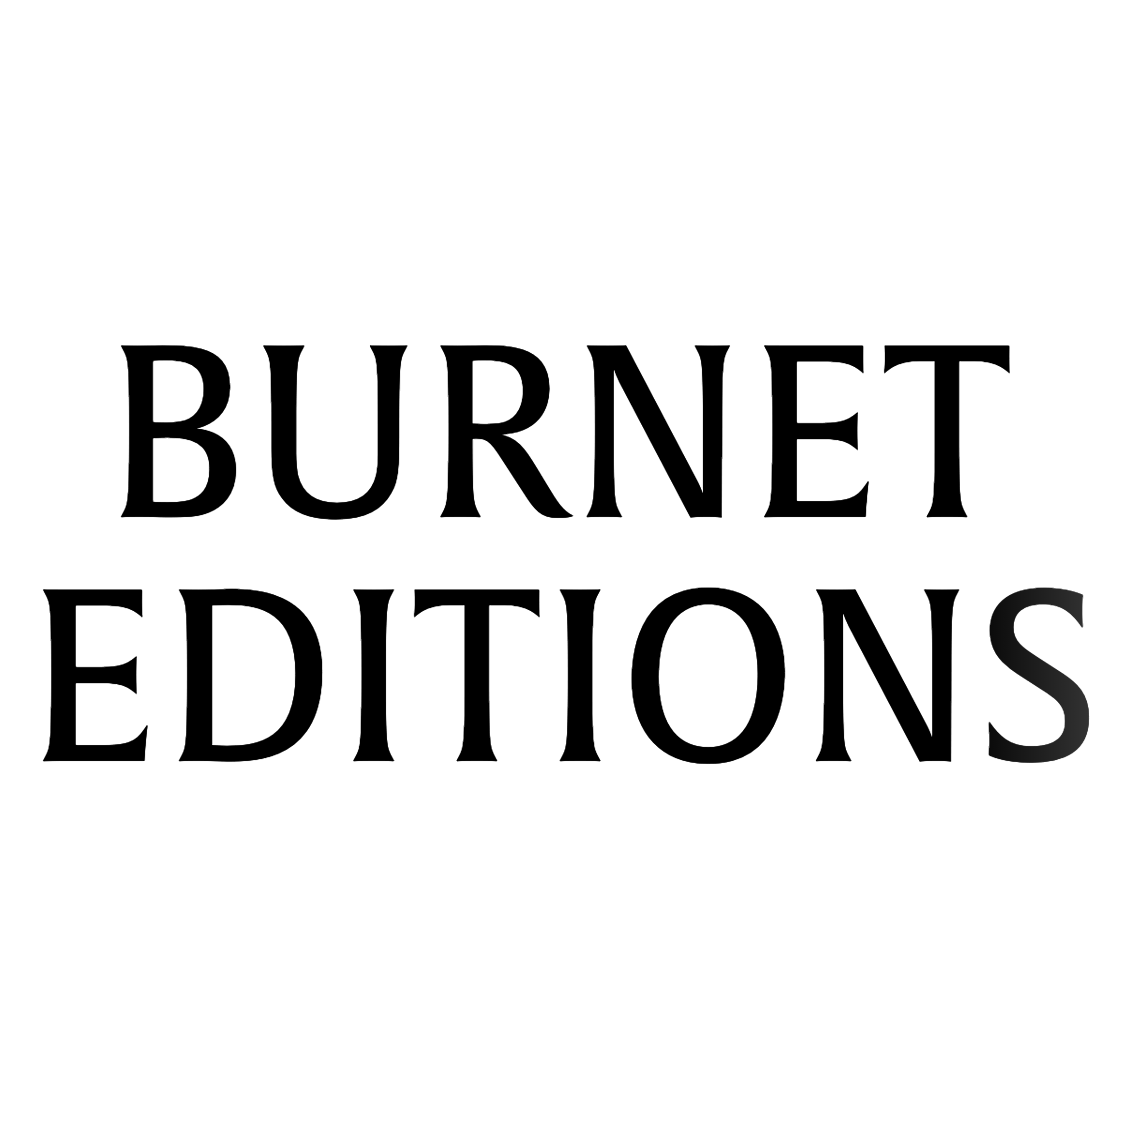 Burnet Editions